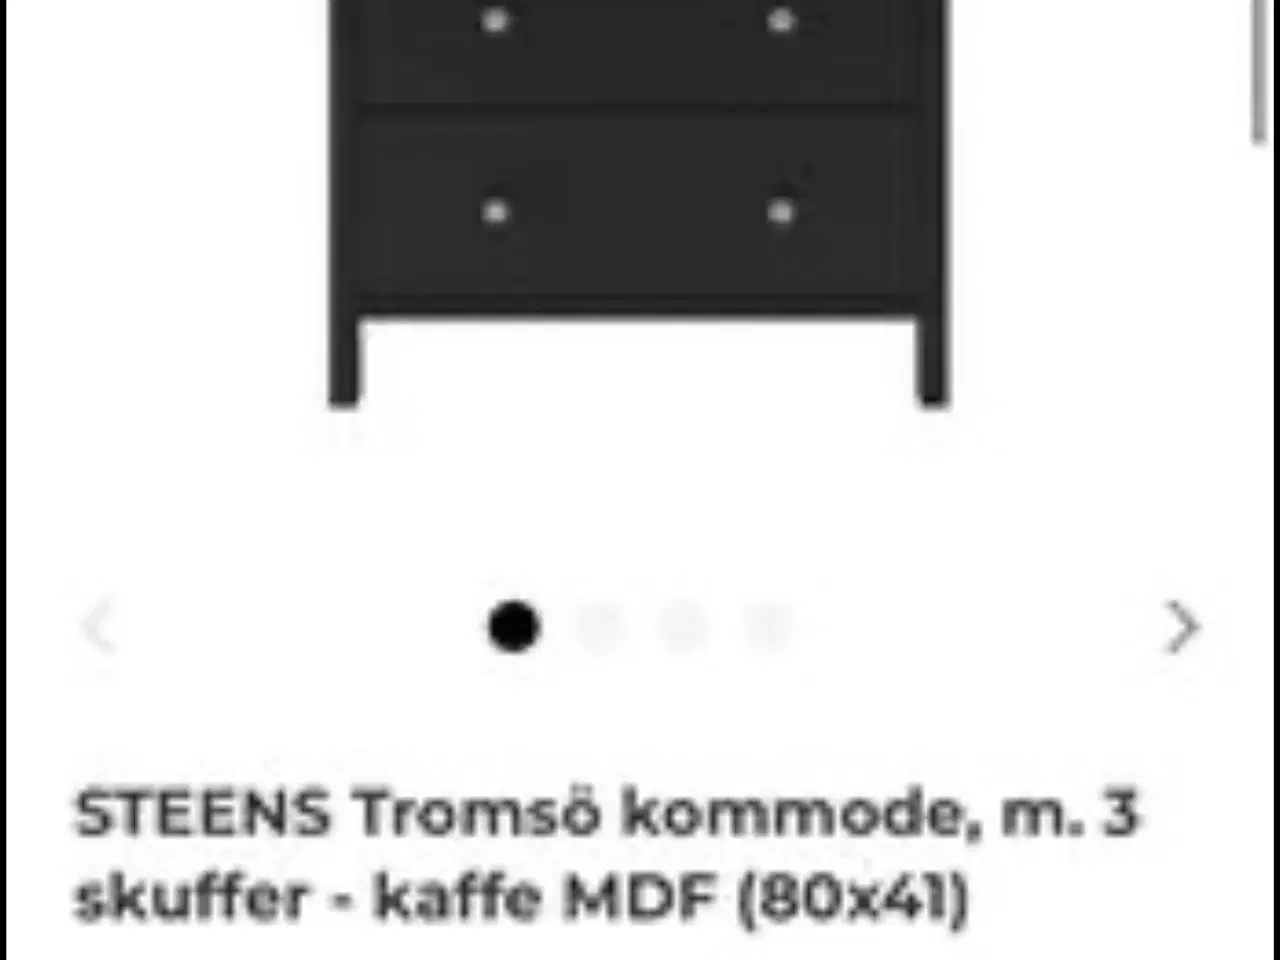 Billede 1 - Tromsö kommode, m. 3 skuffer - kaffe MDF. Helt ny